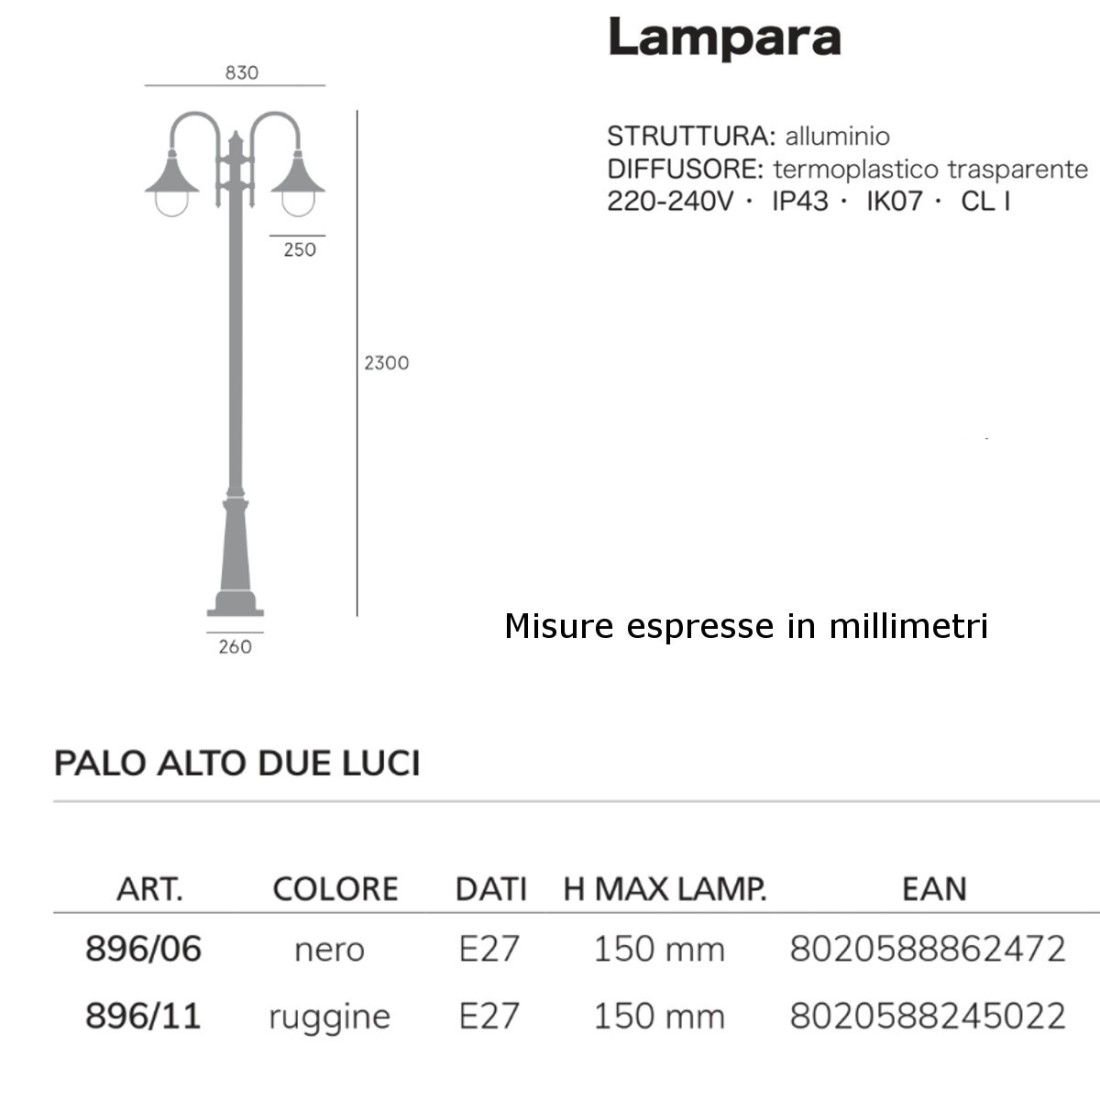 Lampioncino classico Livos LAMPARA 896 E27 LED  ruggine o nero